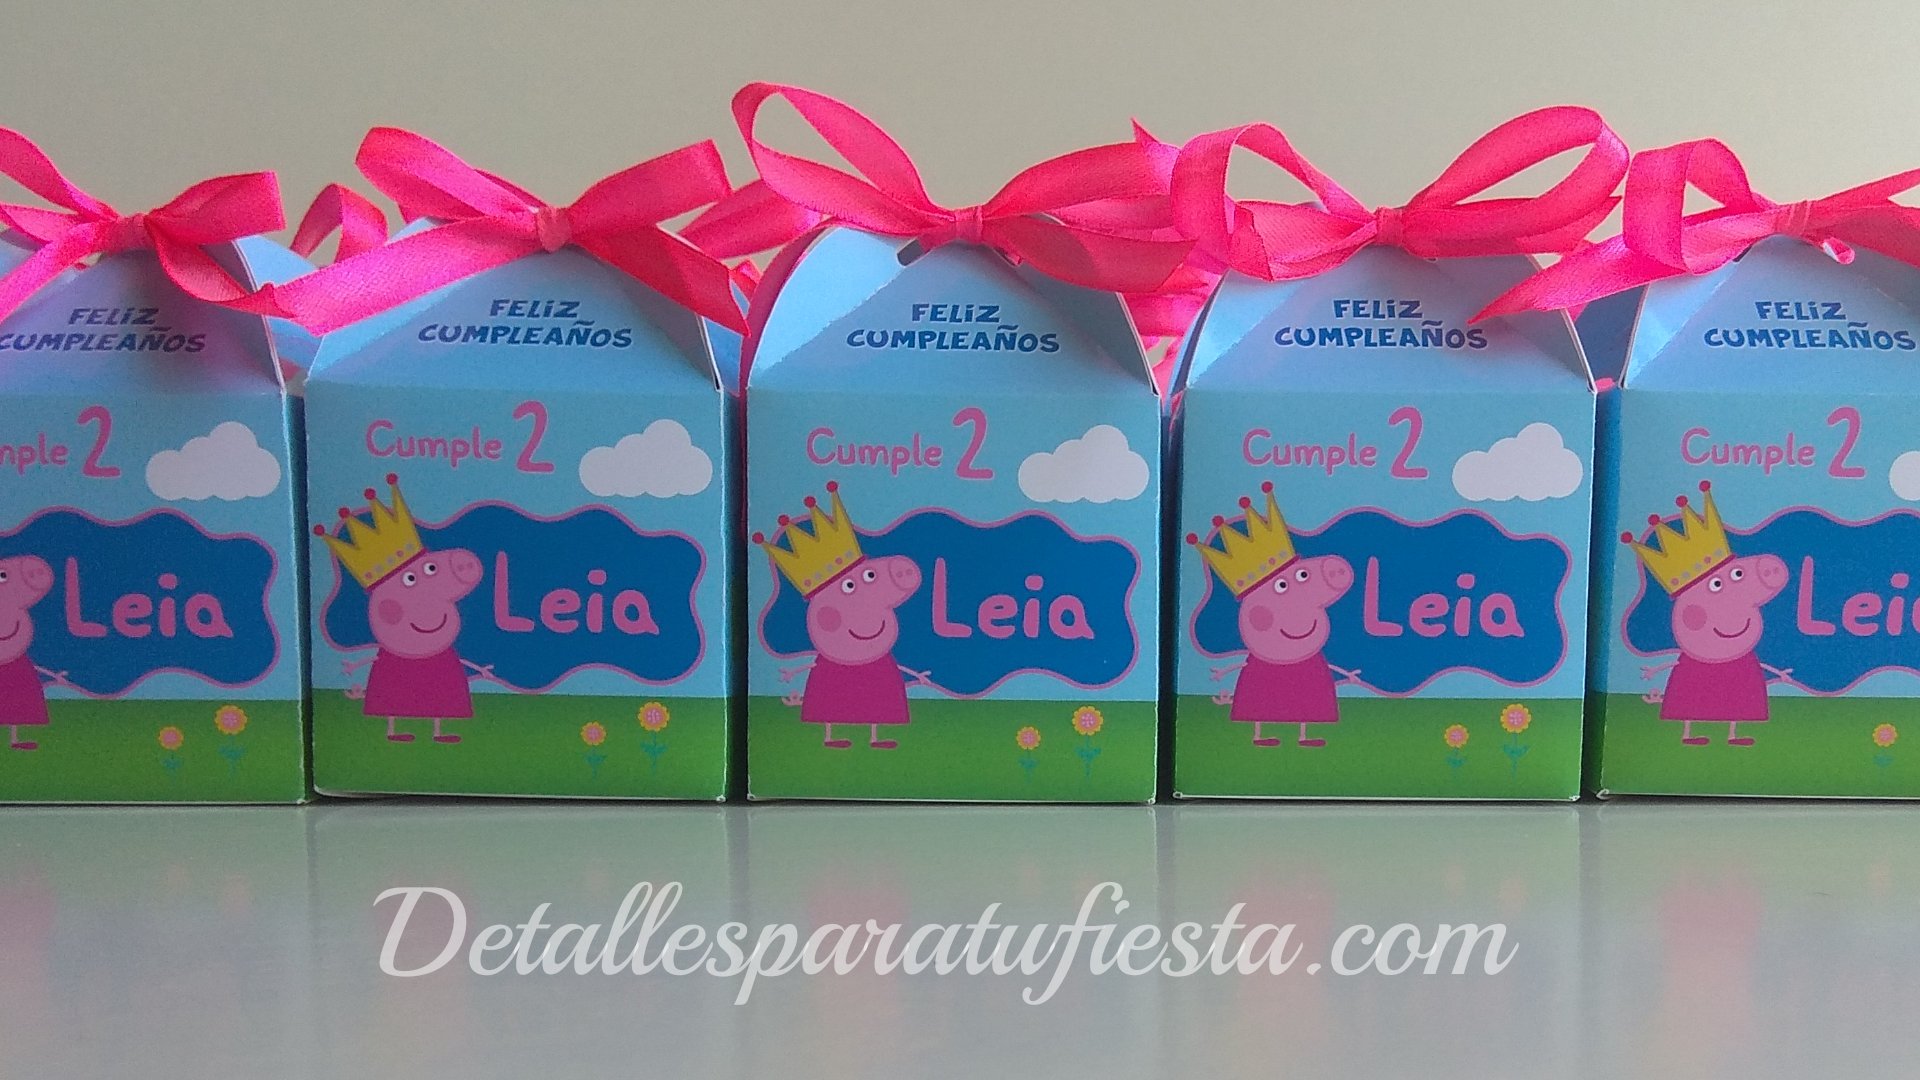 Digital patrocinador Empotrar Detallesparatufiesta on Twitter: "Cajitas de cartón en acabado brillo y temática  Peppa Pig para el segundo cumpleaños de Leía. Cajitas para regalar a los  invitados con algún detalles o para los nin@s